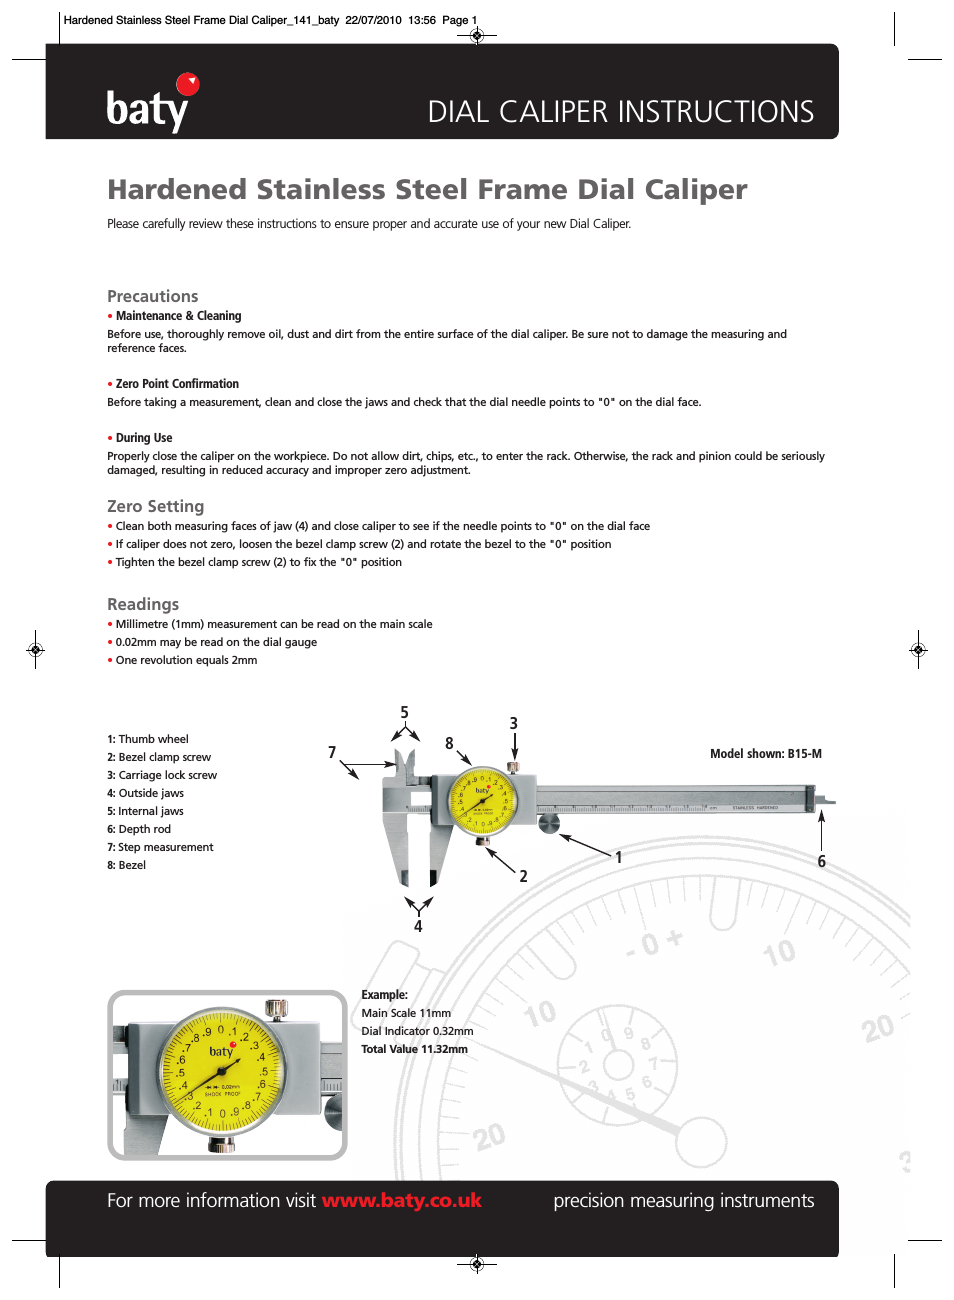 Baty - Hardened Stainless Steel Frame Dial Caliper